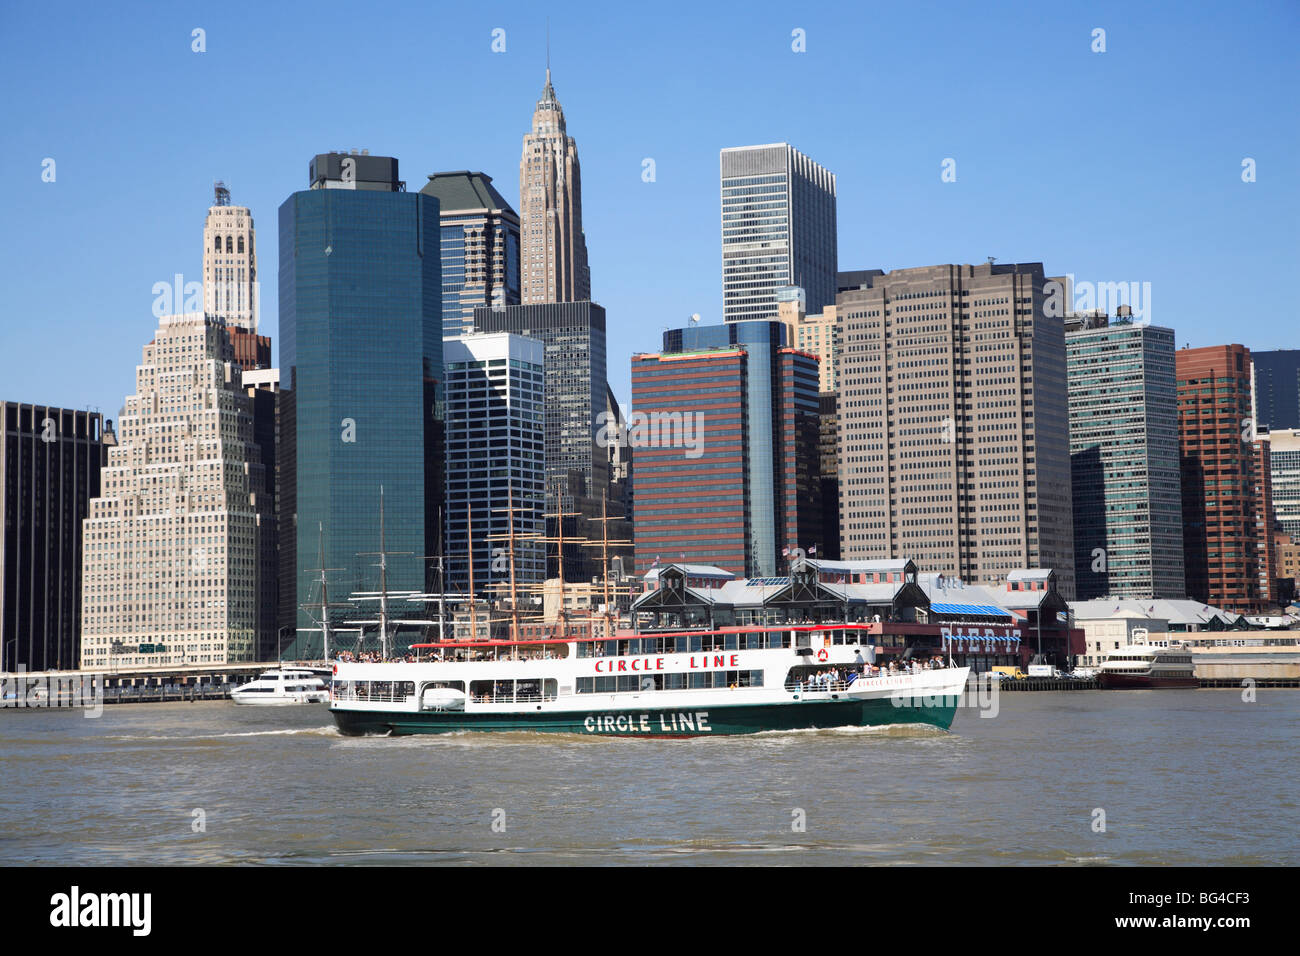 Ligne Circle Tour Voile, lower Manhattan skyline, financial district, New York City, États-Unis d'Amérique, Amérique du Nord Banque D'Images